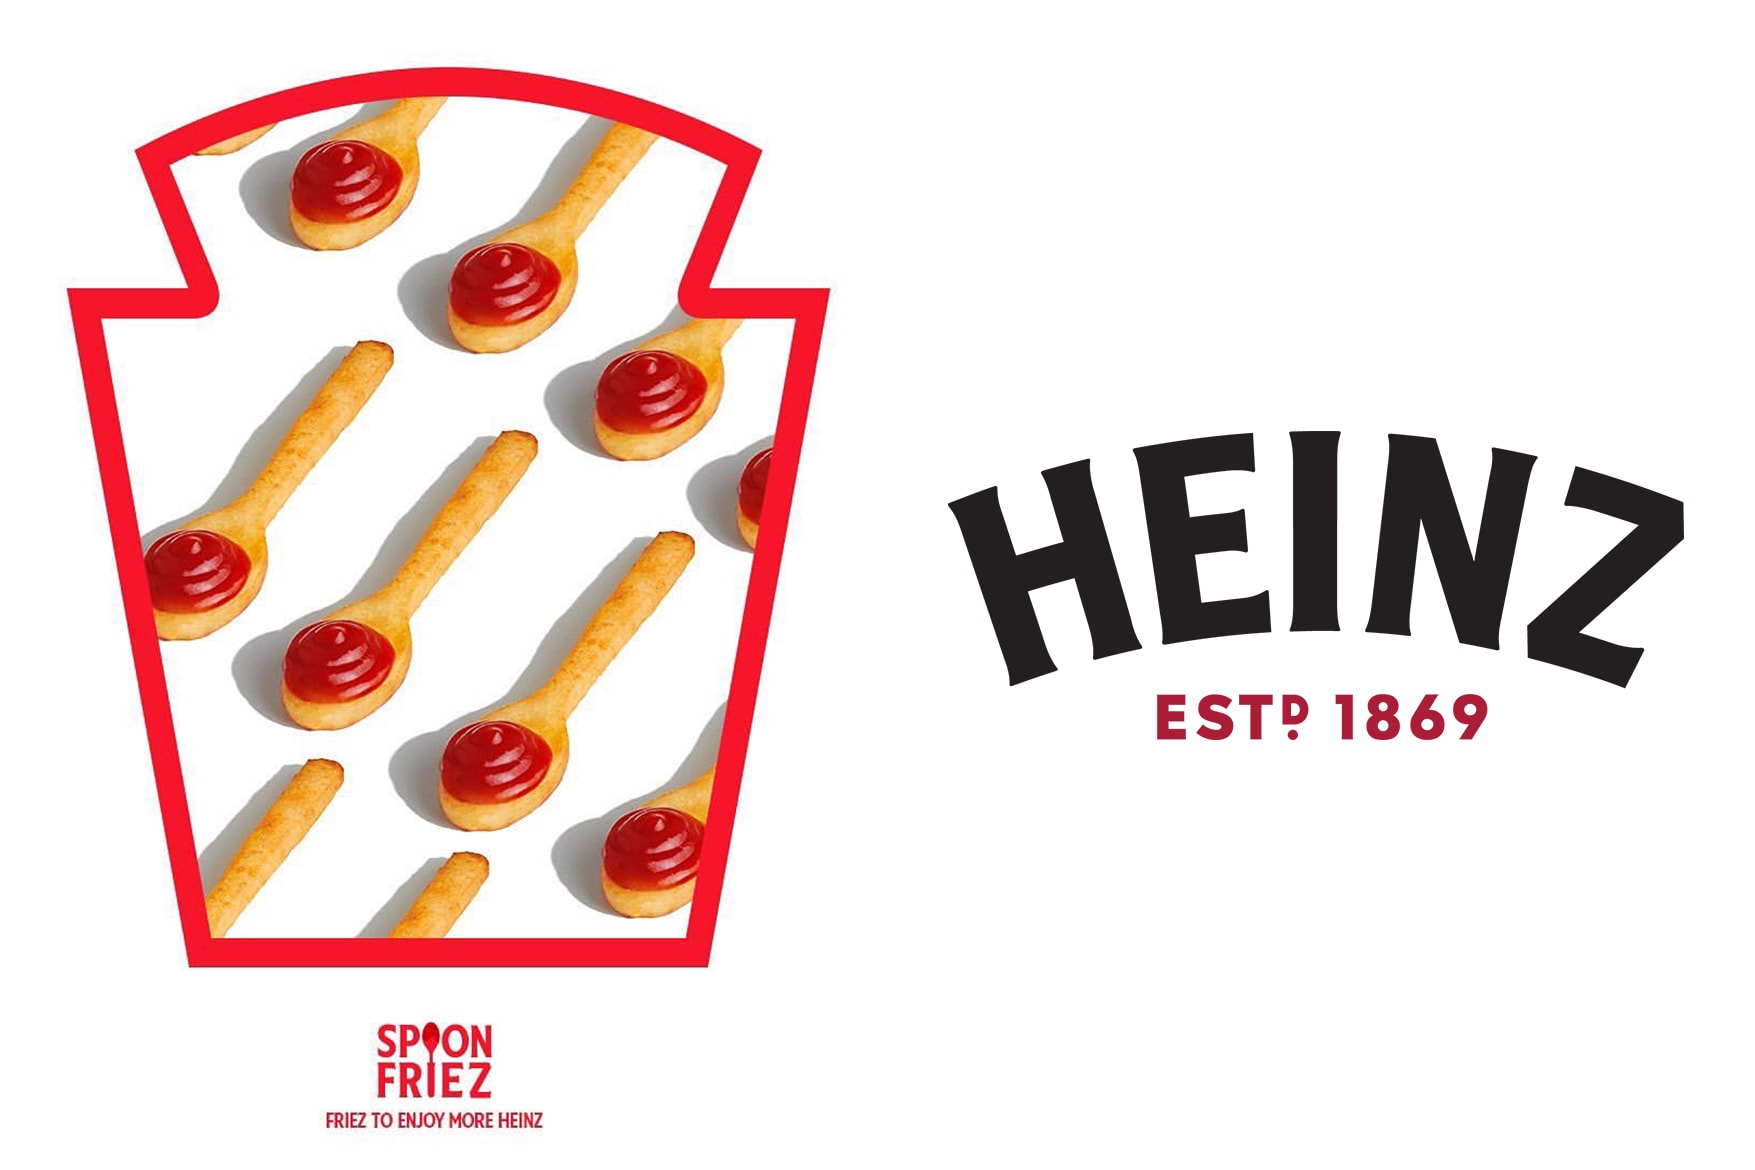 heinz-new-product-heinz-spoon-friez